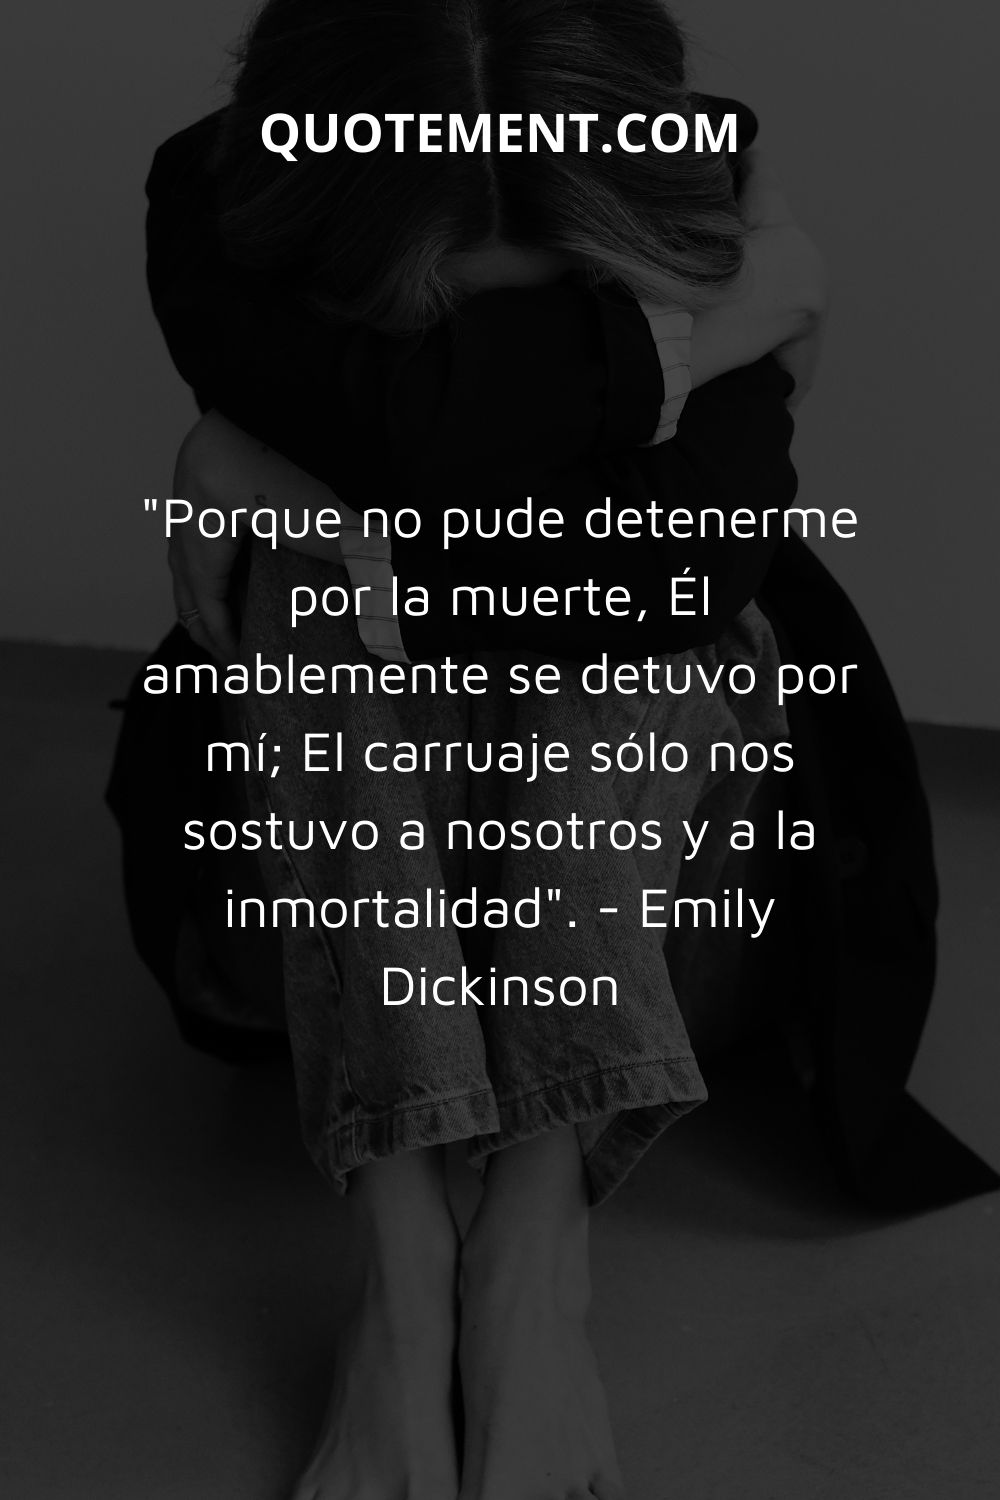 "Porque no pude detenerme por la muerte, Él amablemente se detuvo por mí; El carruaje sólo nos contenía a nosotros y a la inmortalidad". - Emily Dickinson